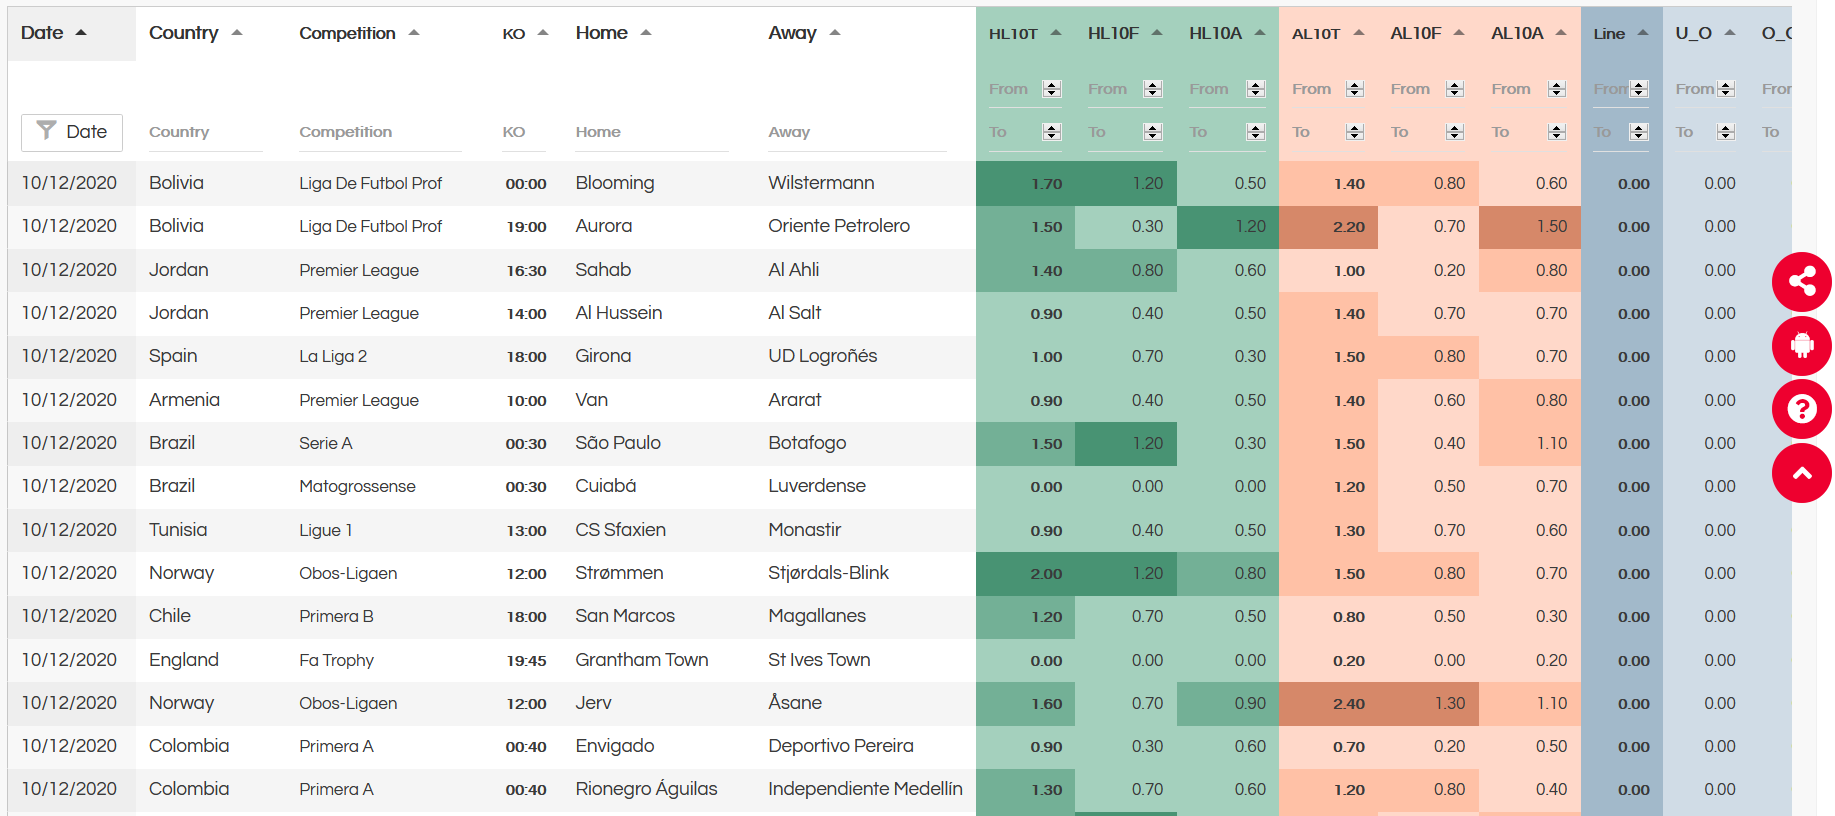 Preusen Munster vs TSV 1860 Munich» Predictions, Odds, Live Score & Stats